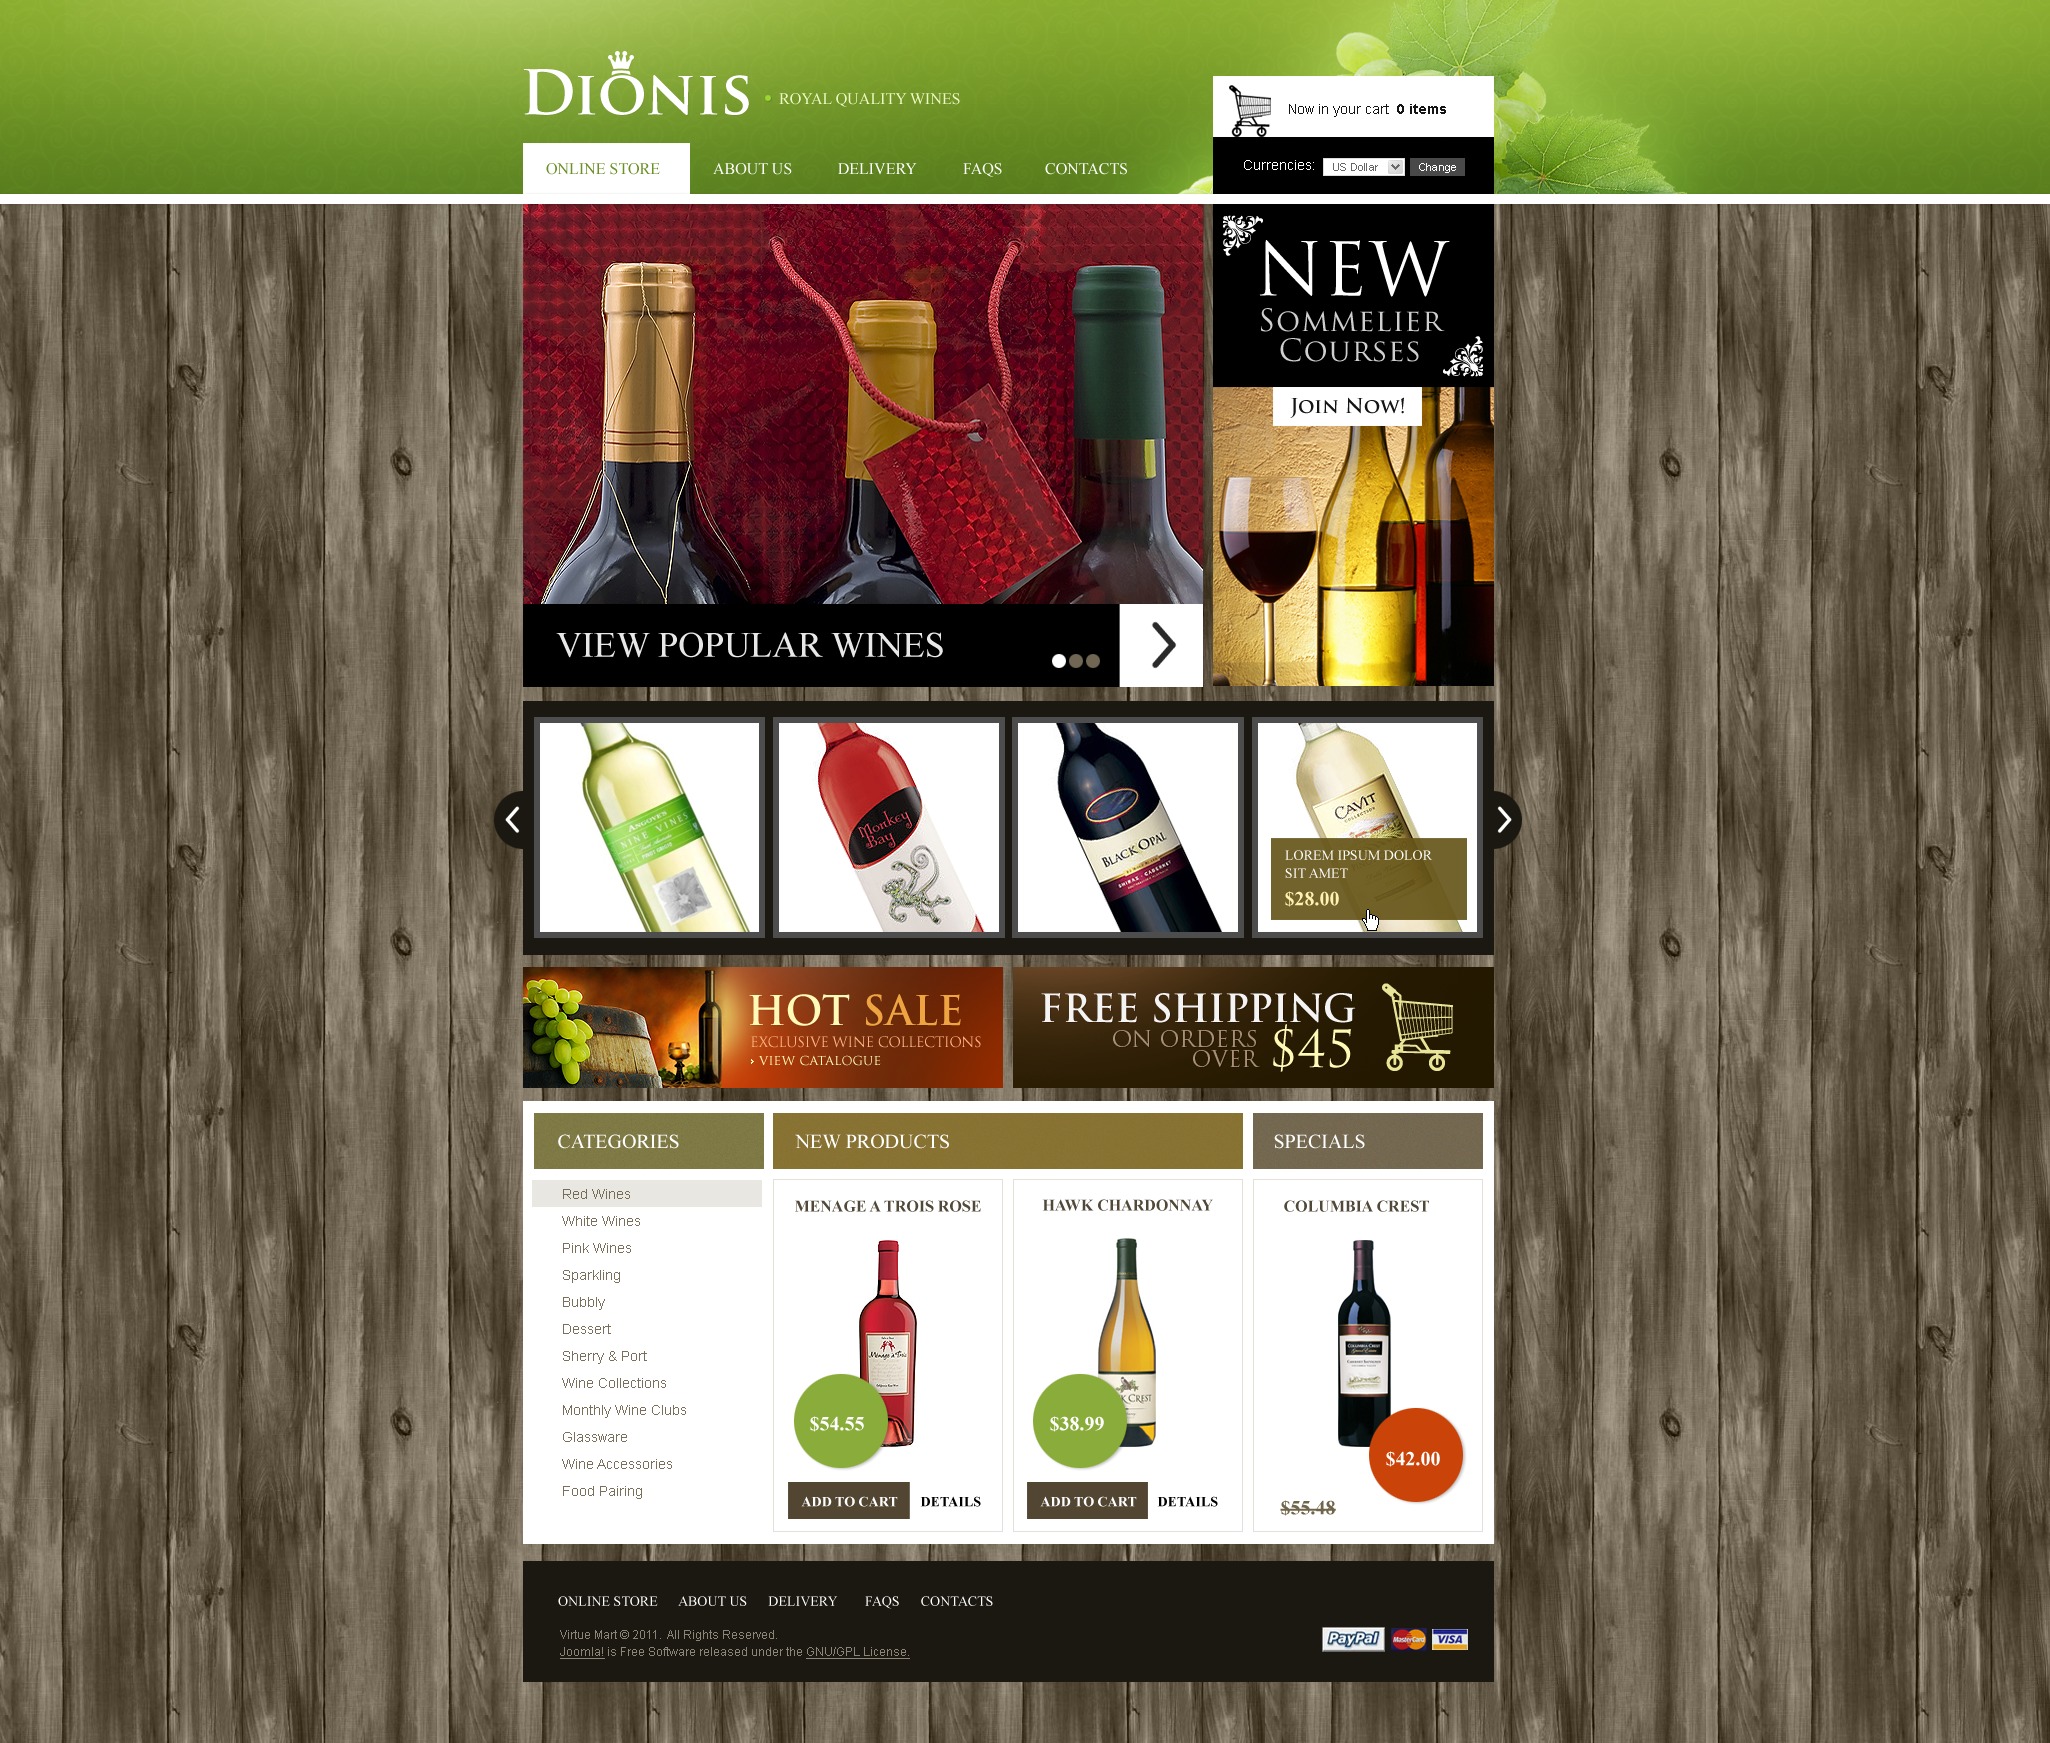 Вино дионис купить. Дизайн винного ресторана. Wine quality Price. Дионис клуб линейки вин.